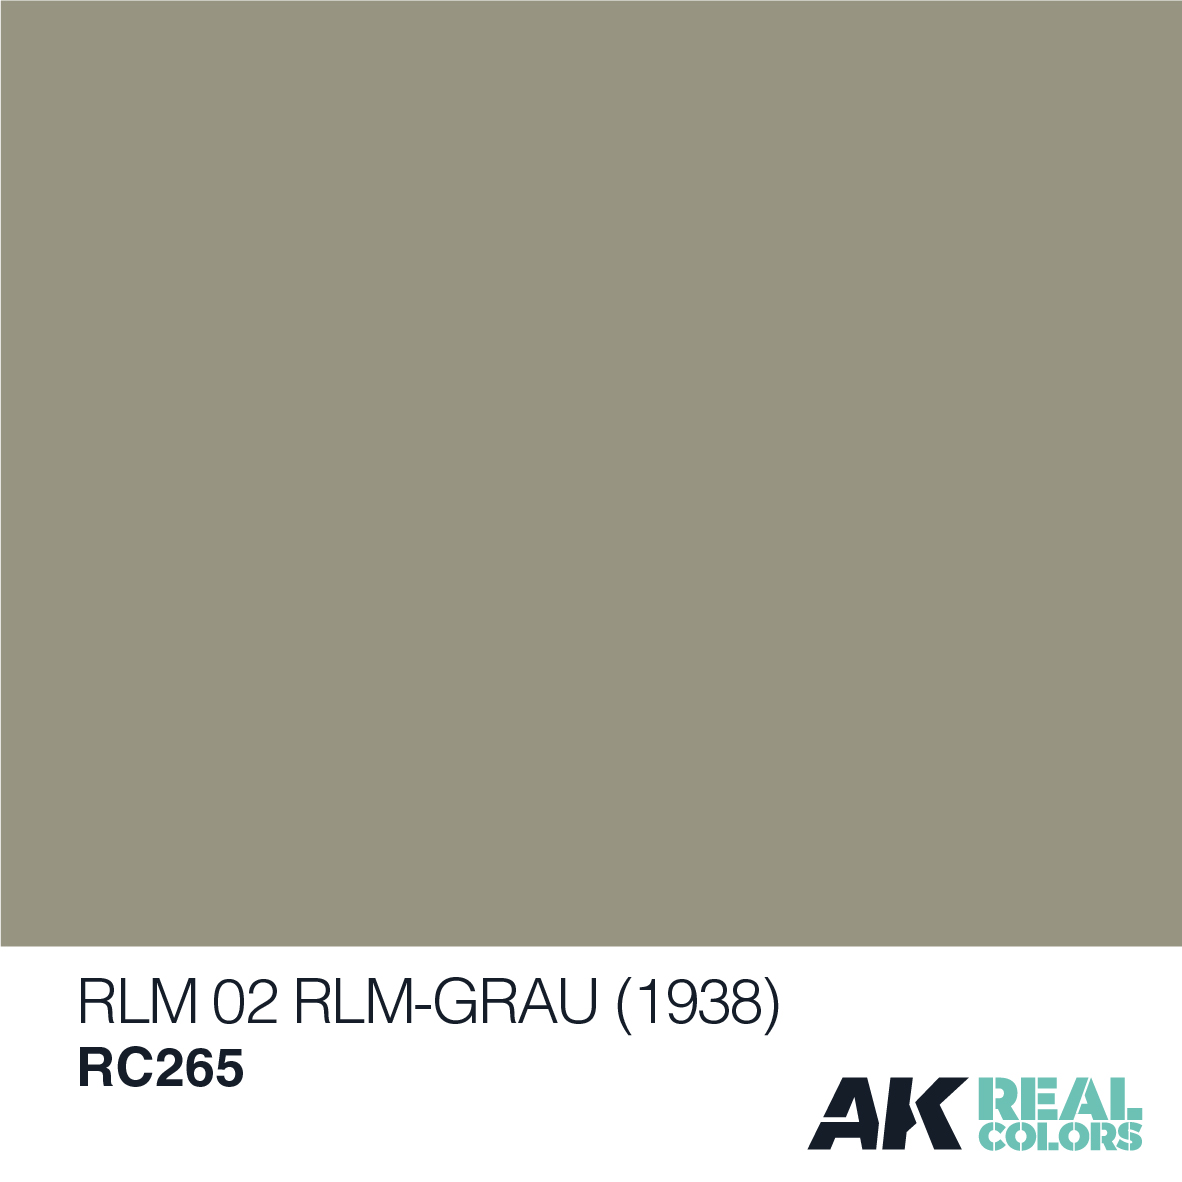 RLM 02 RLM-GRAU (1938)